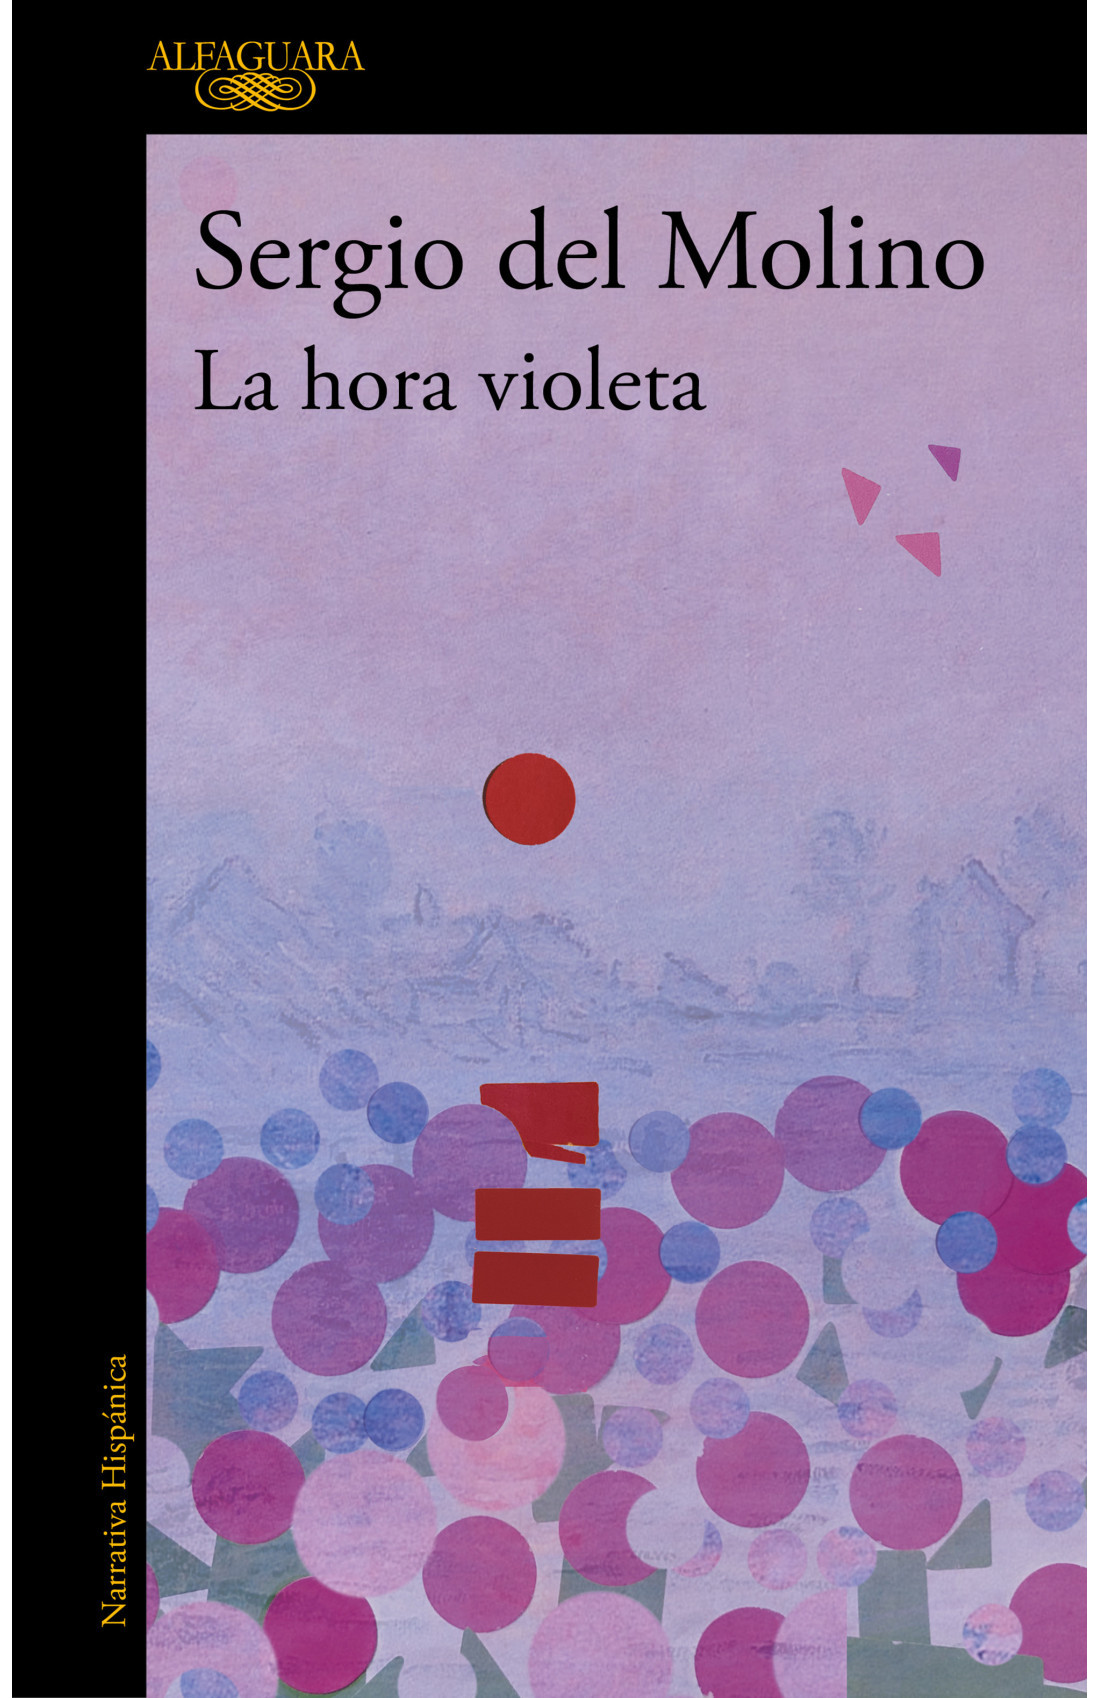 10º aniversario de la publicación de "La hora violeta"